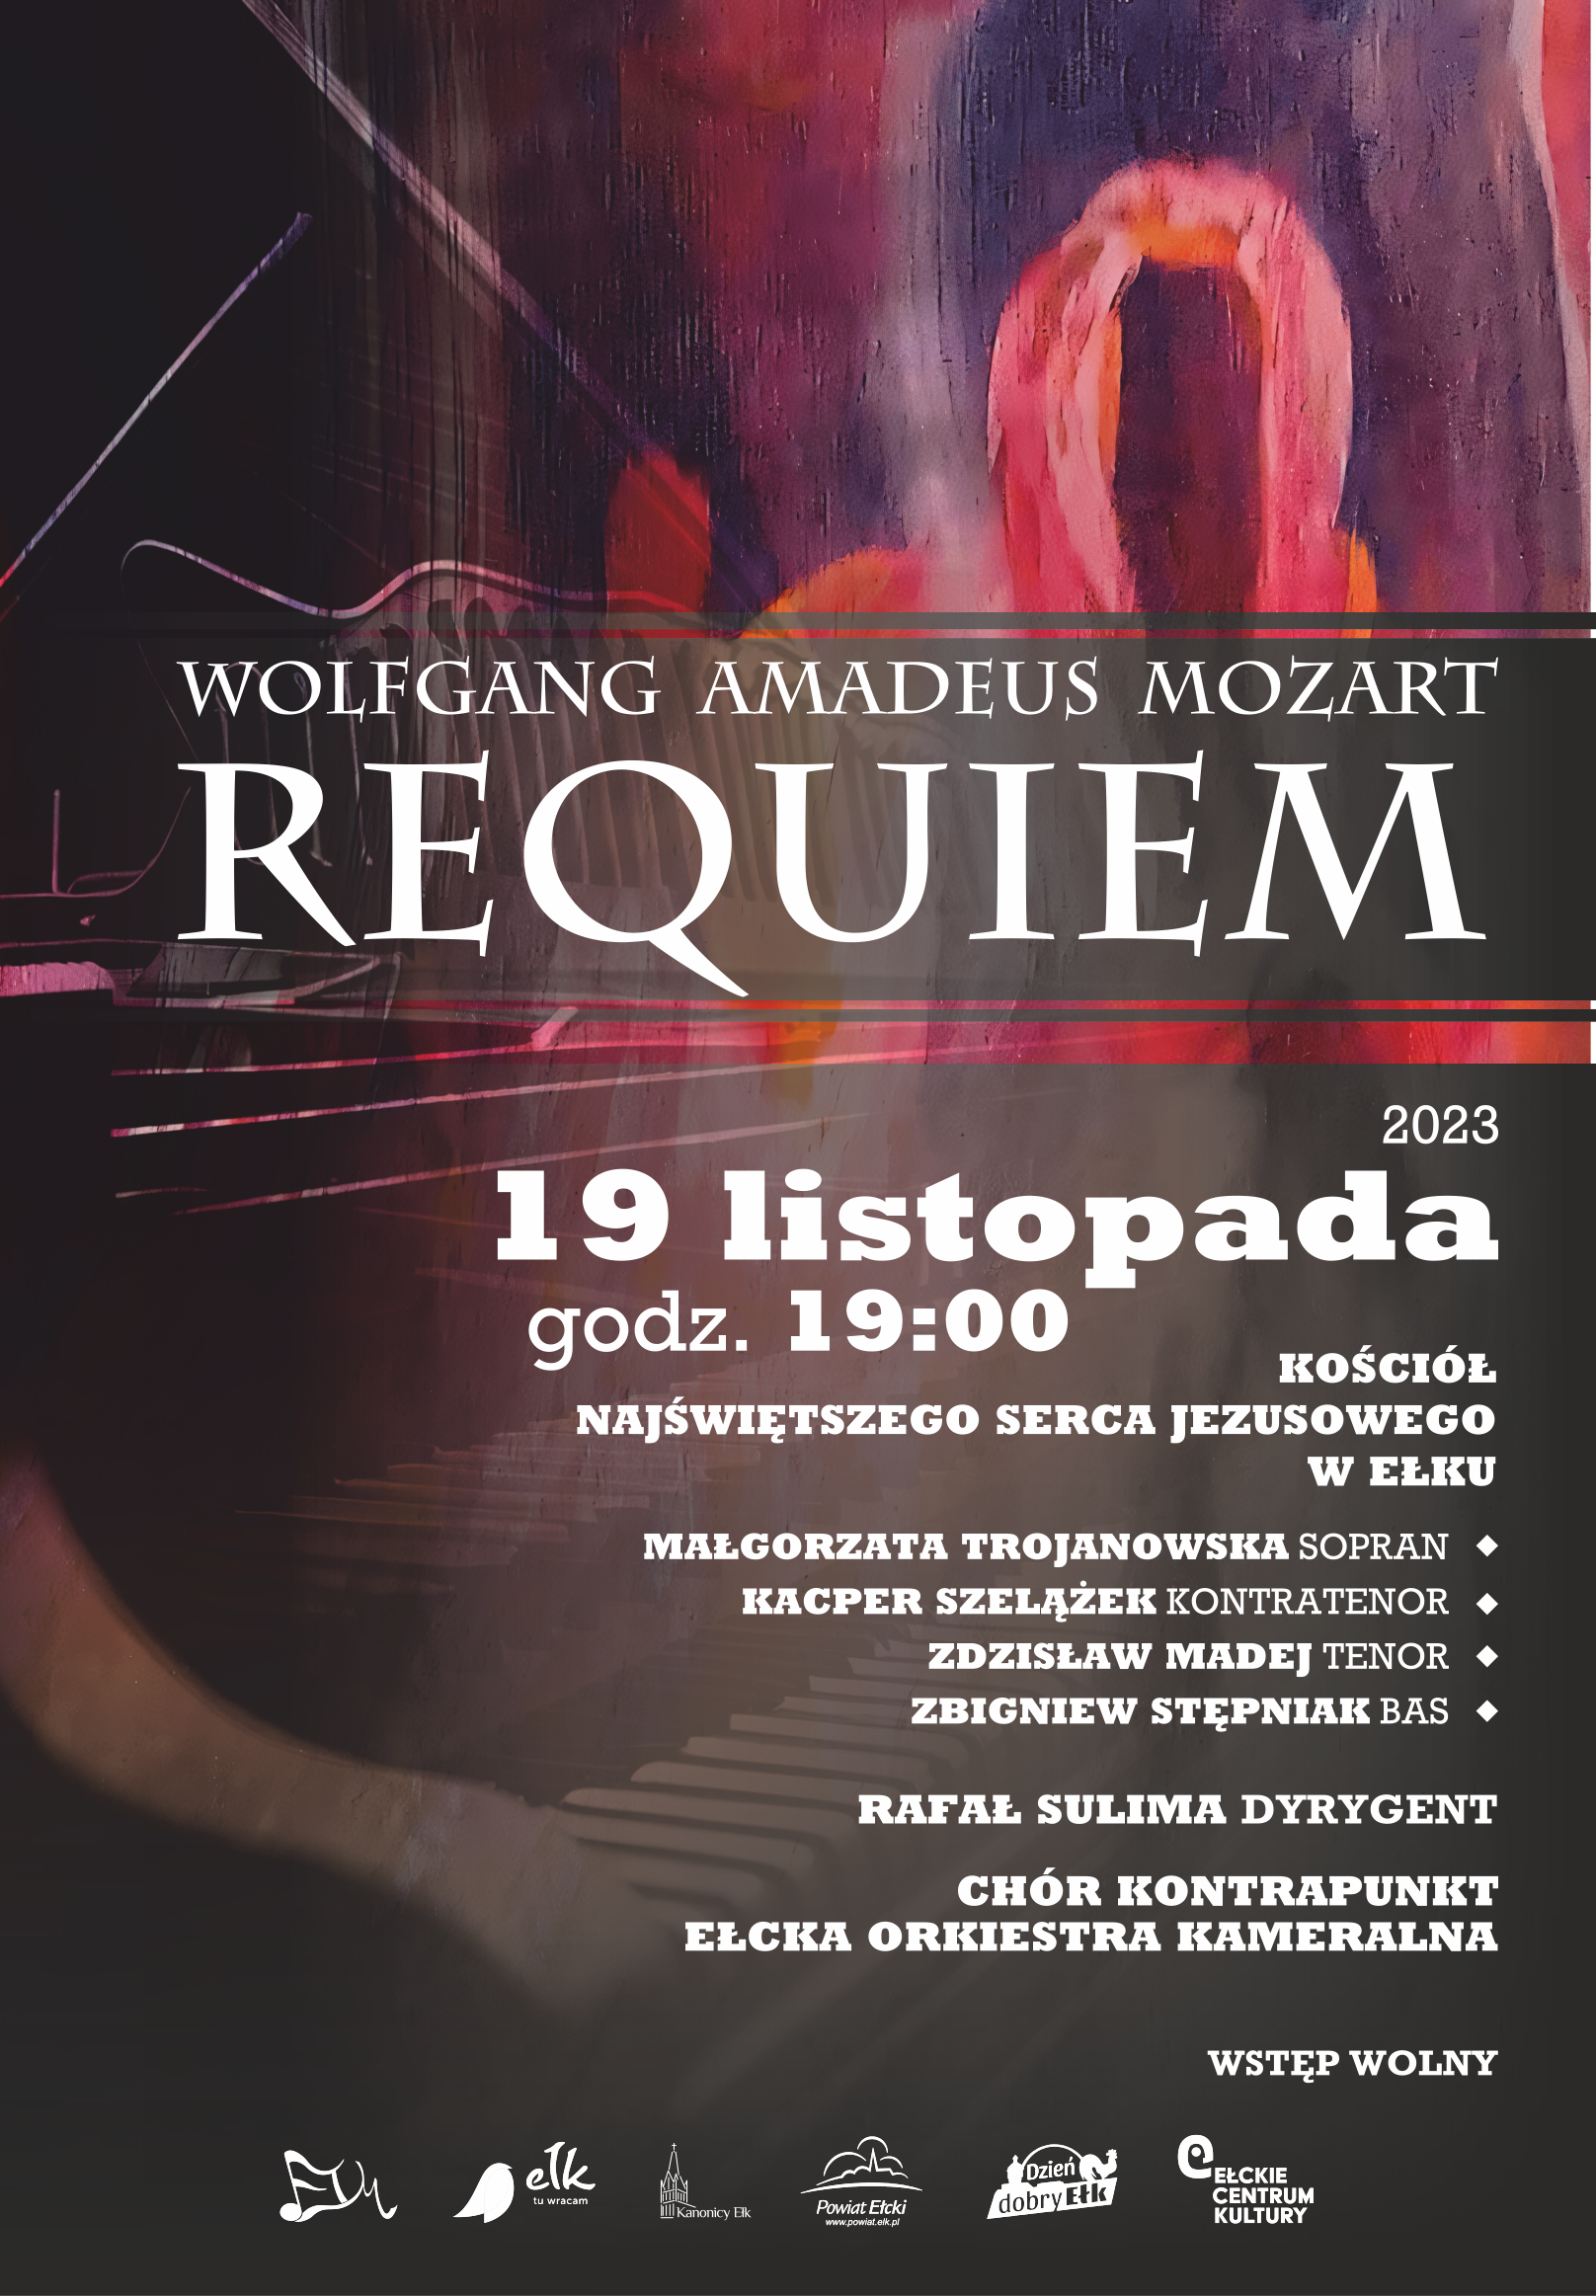 Konzert "REQUIEM" VON W. A. Mozart